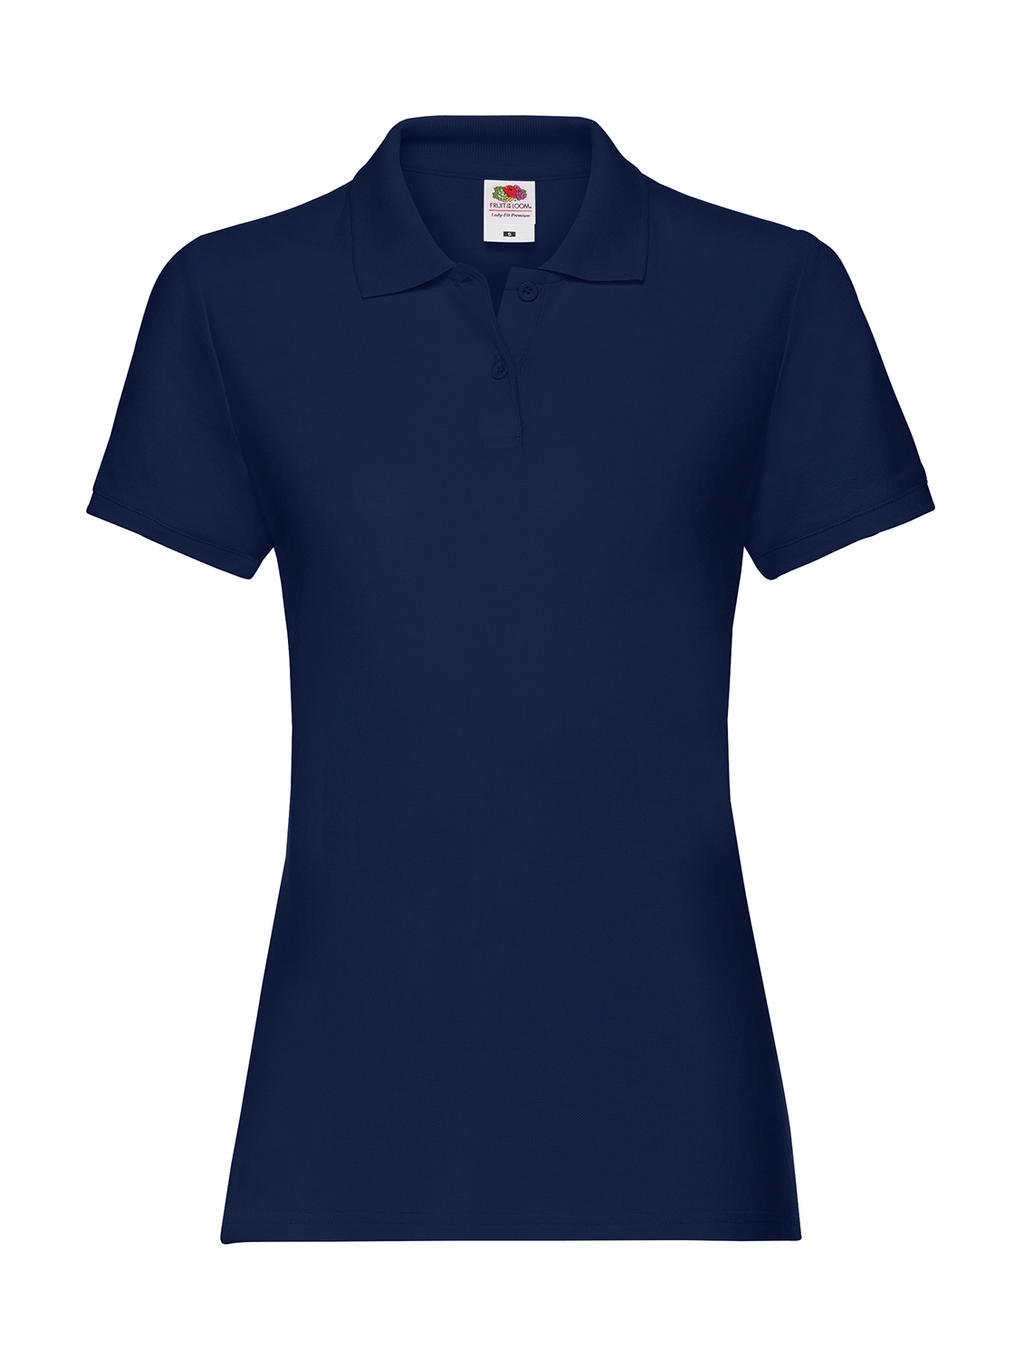 Ladies` Premium Polo zum Besticken und Bedrucken in der Farbe Navy mit Ihren Logo, Schriftzug oder Motiv.